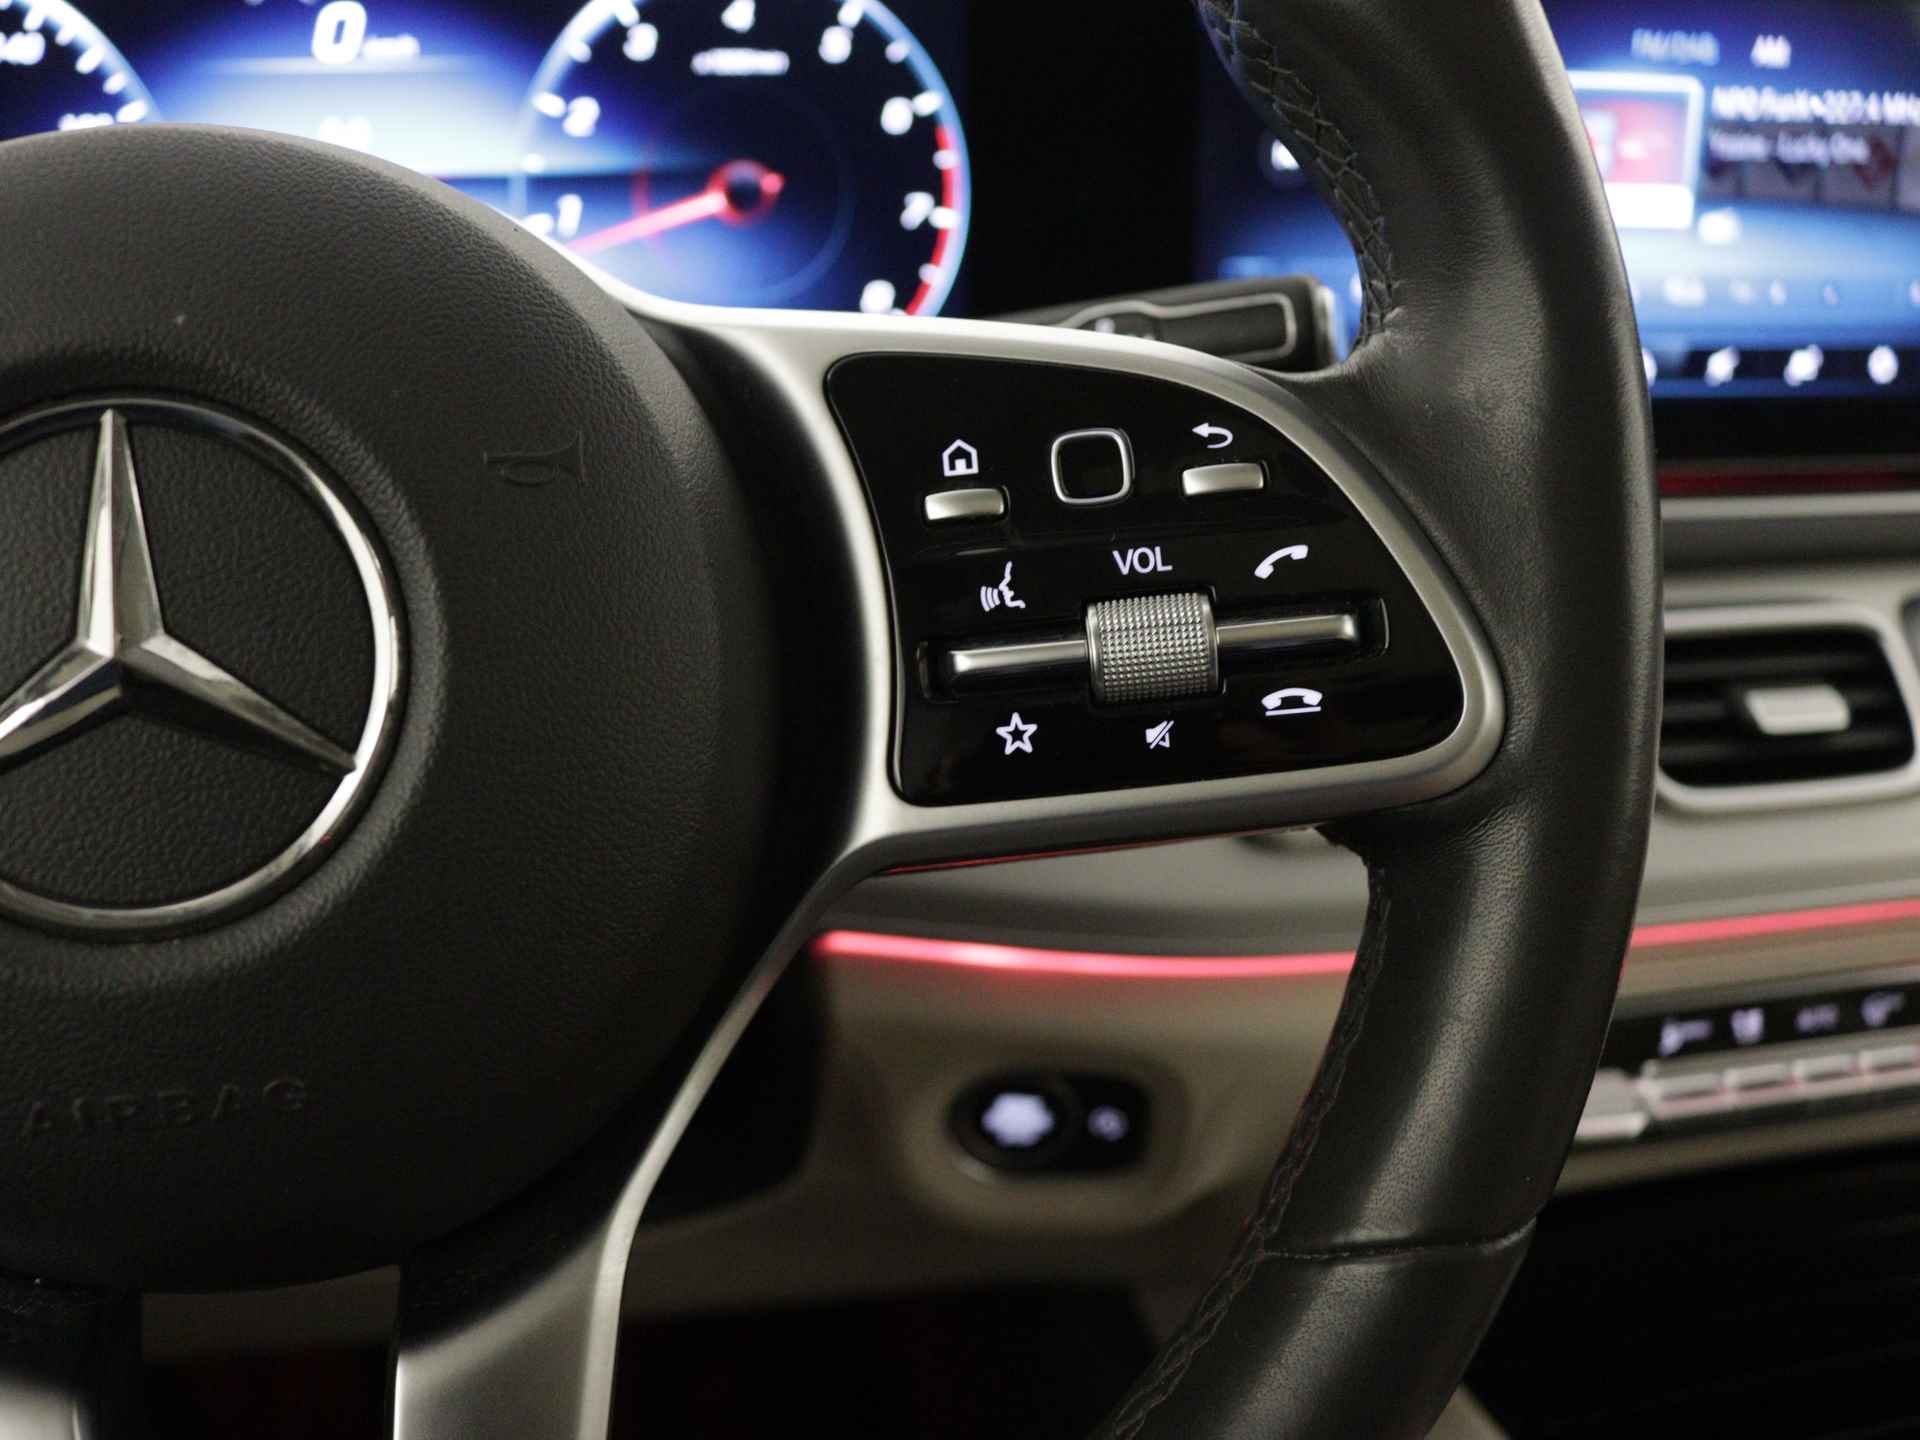 Mercedes-Benz GLE 450 4MATIC AMG Line Premium | Panoramadak | Luchtvering | Burmester | Navigatie | MBUX wide screen | Alarm klasse 3 | Parking support | inclusief 24 maanden MB Certified garantie voor europa - 20/39